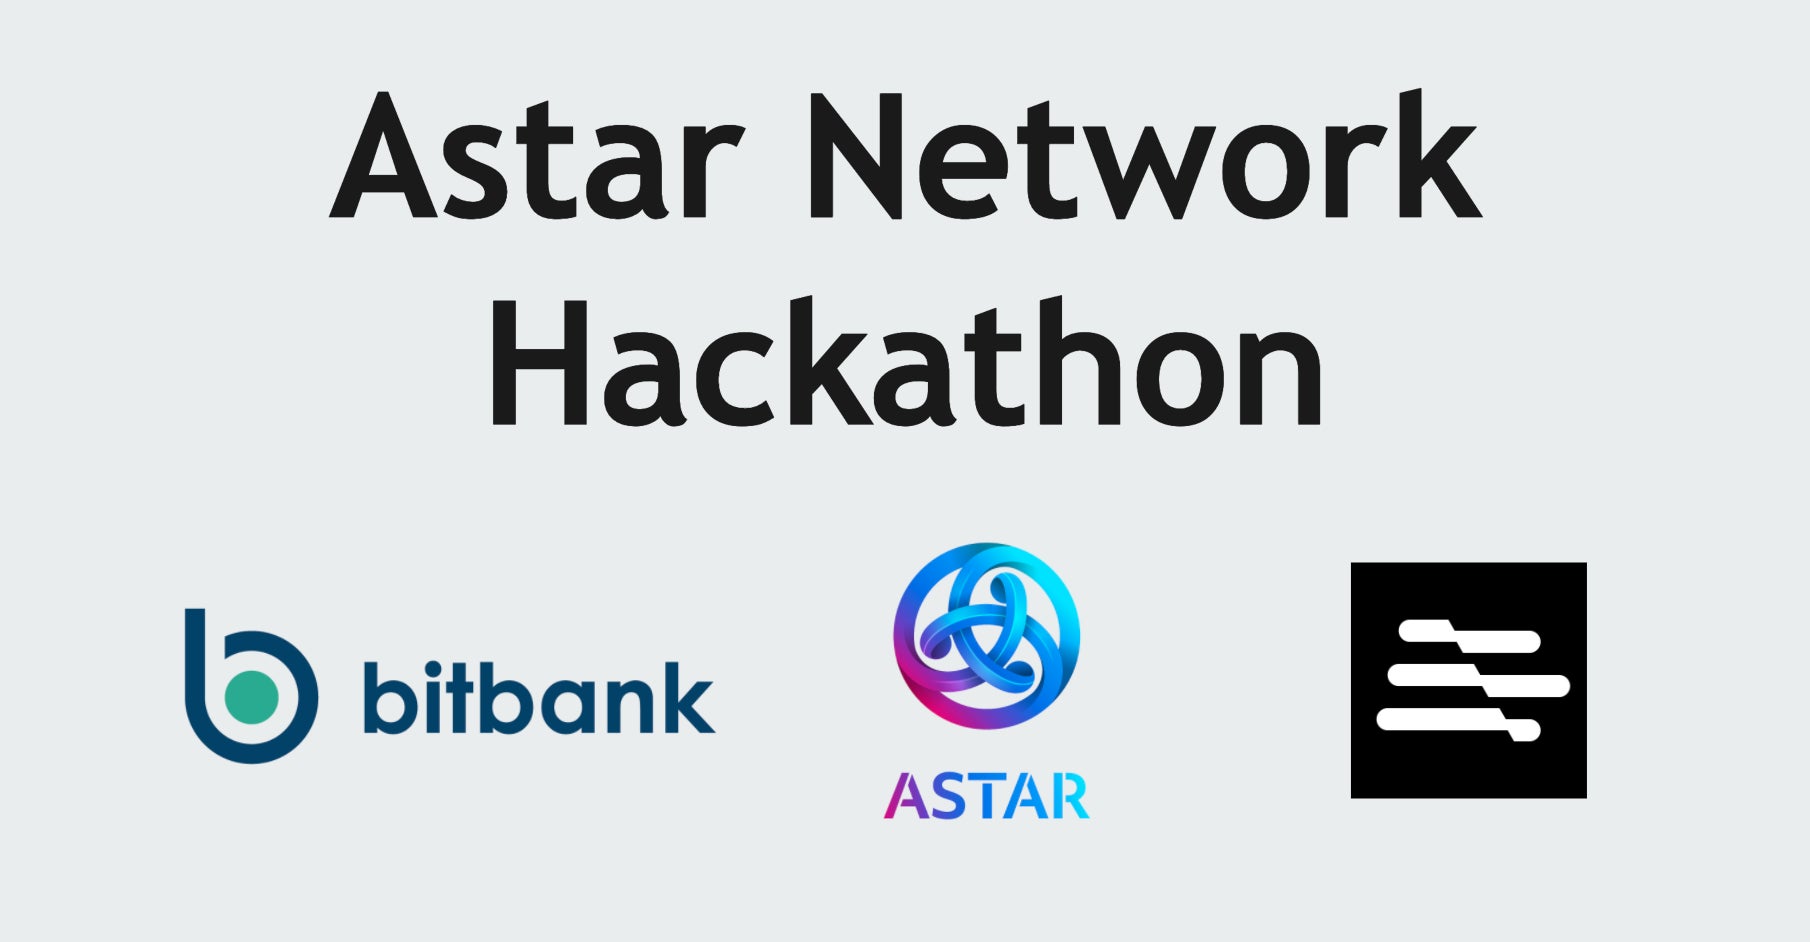 暗号資産交換業者ビットバンク、Web3開発者向け「Astar Network Hackathon」にスポンサーとして協賛